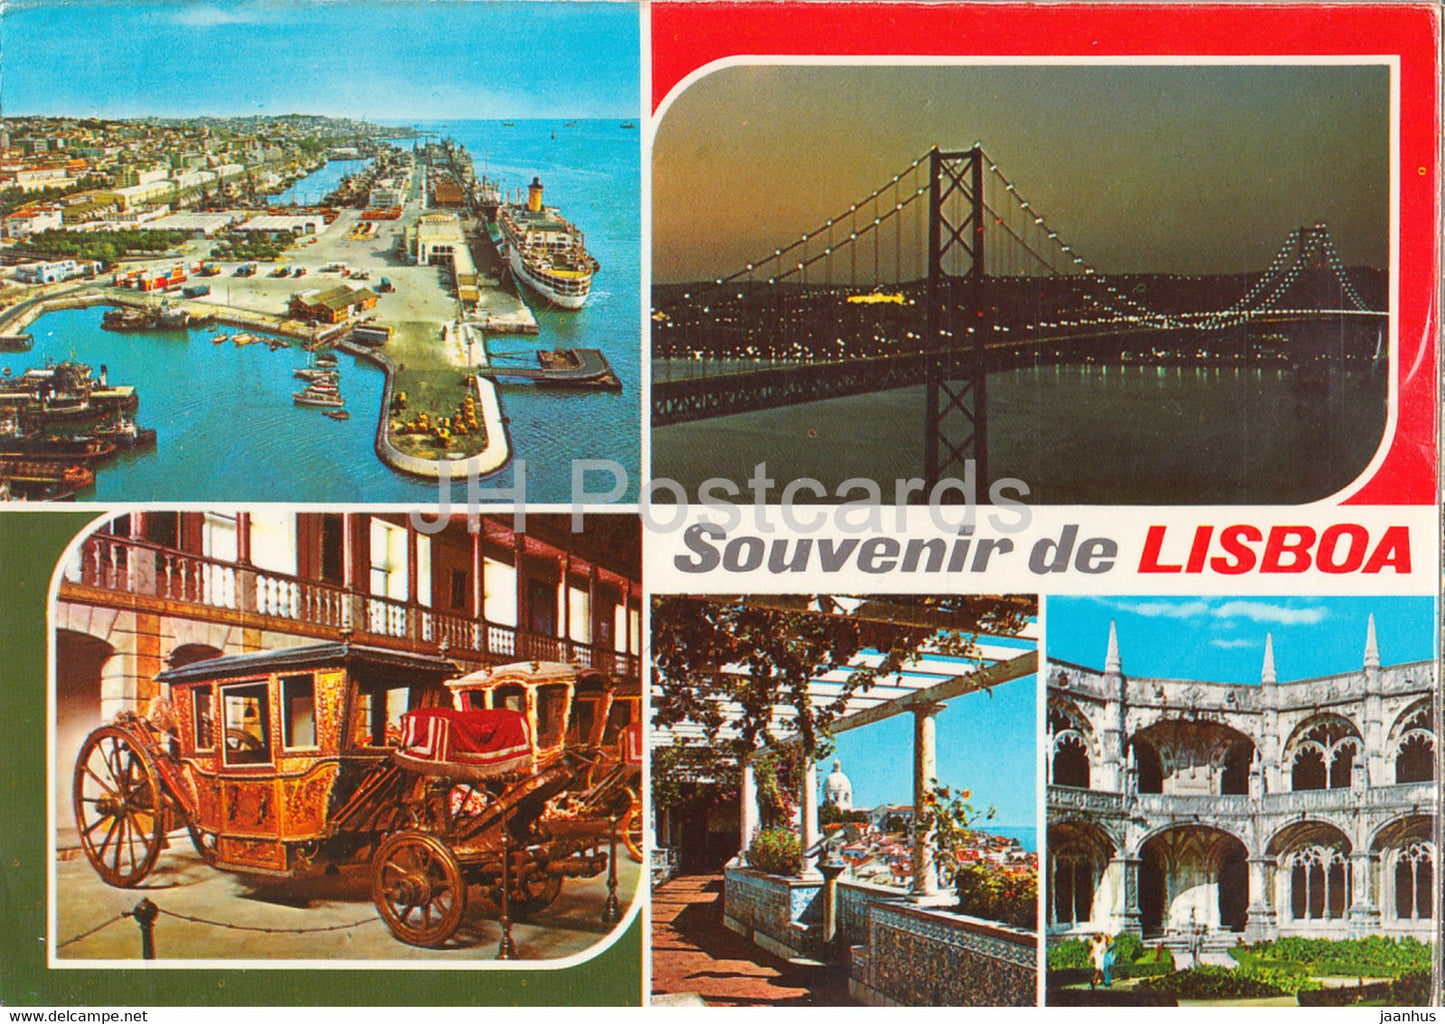 Souvenir de Lisboa - port - horse carriage - multiview - 1978 - Portugal - used - JH Postcards